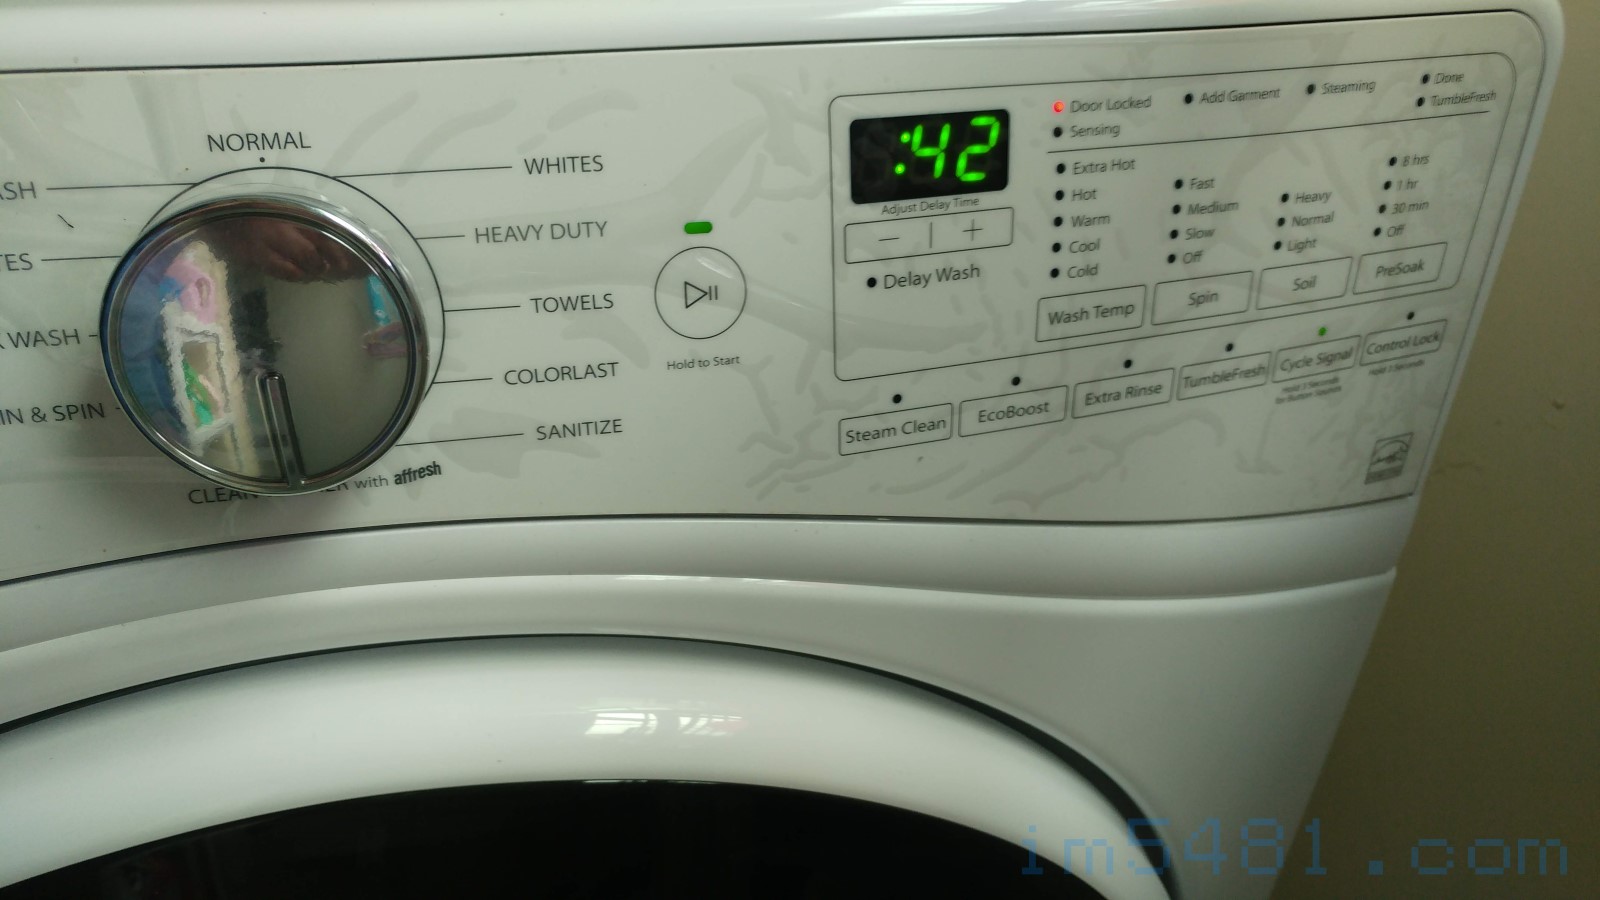 槽洗淨模式-42分鐘。這時洗衣機的內筒會開始旋轉清洗